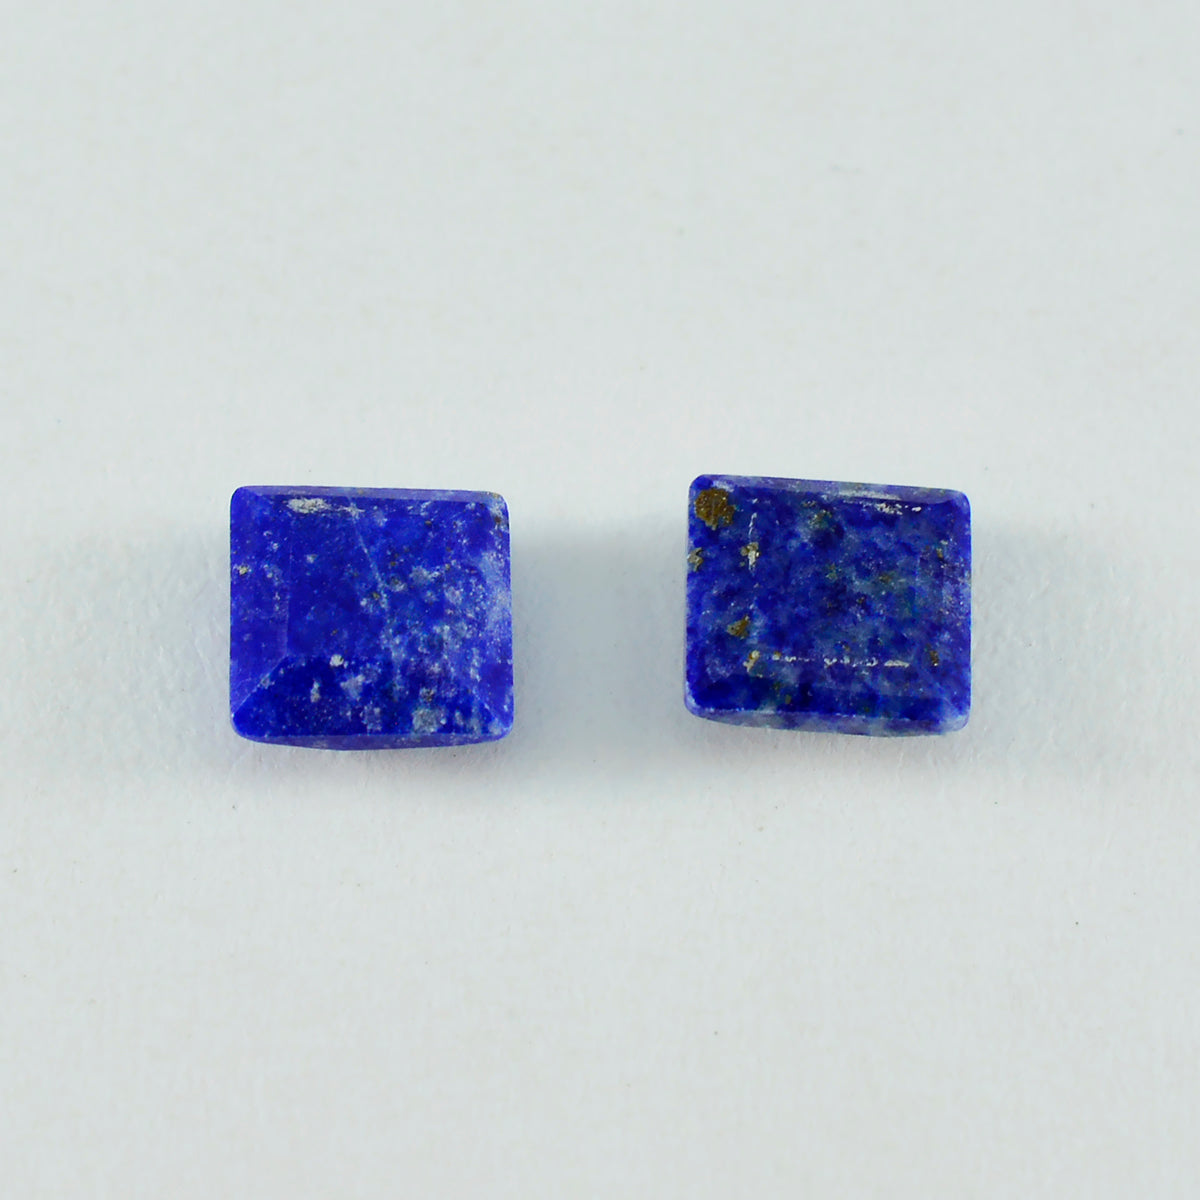 riyogems 1 шт. настоящий синий лазурит ограненный 15x15 мм квадратной формы драгоценные камни замечательного качества